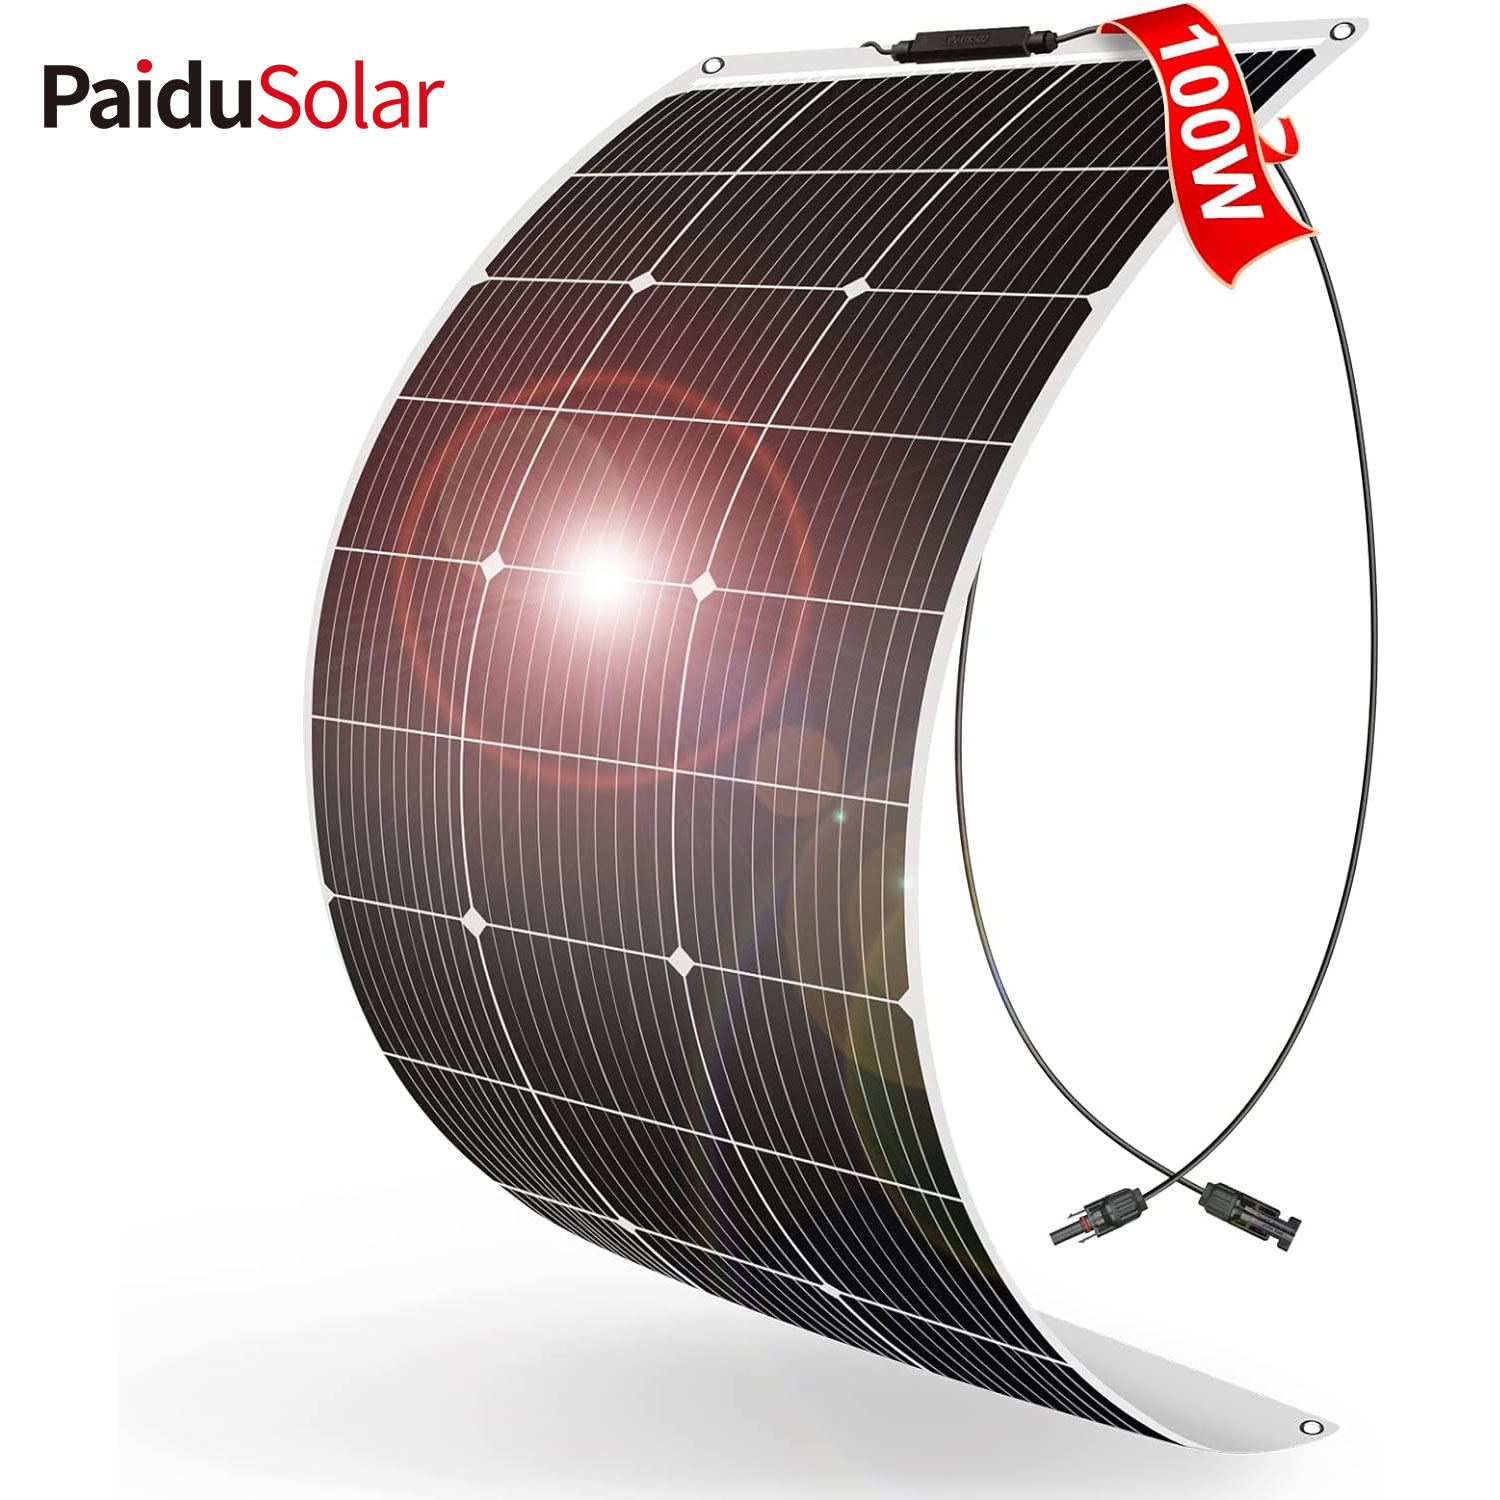 PaiduSolar 100W 12V Zginany, półelastyczny panel słoneczny do przyczepy kempingowej RV do łodzi kempingowej